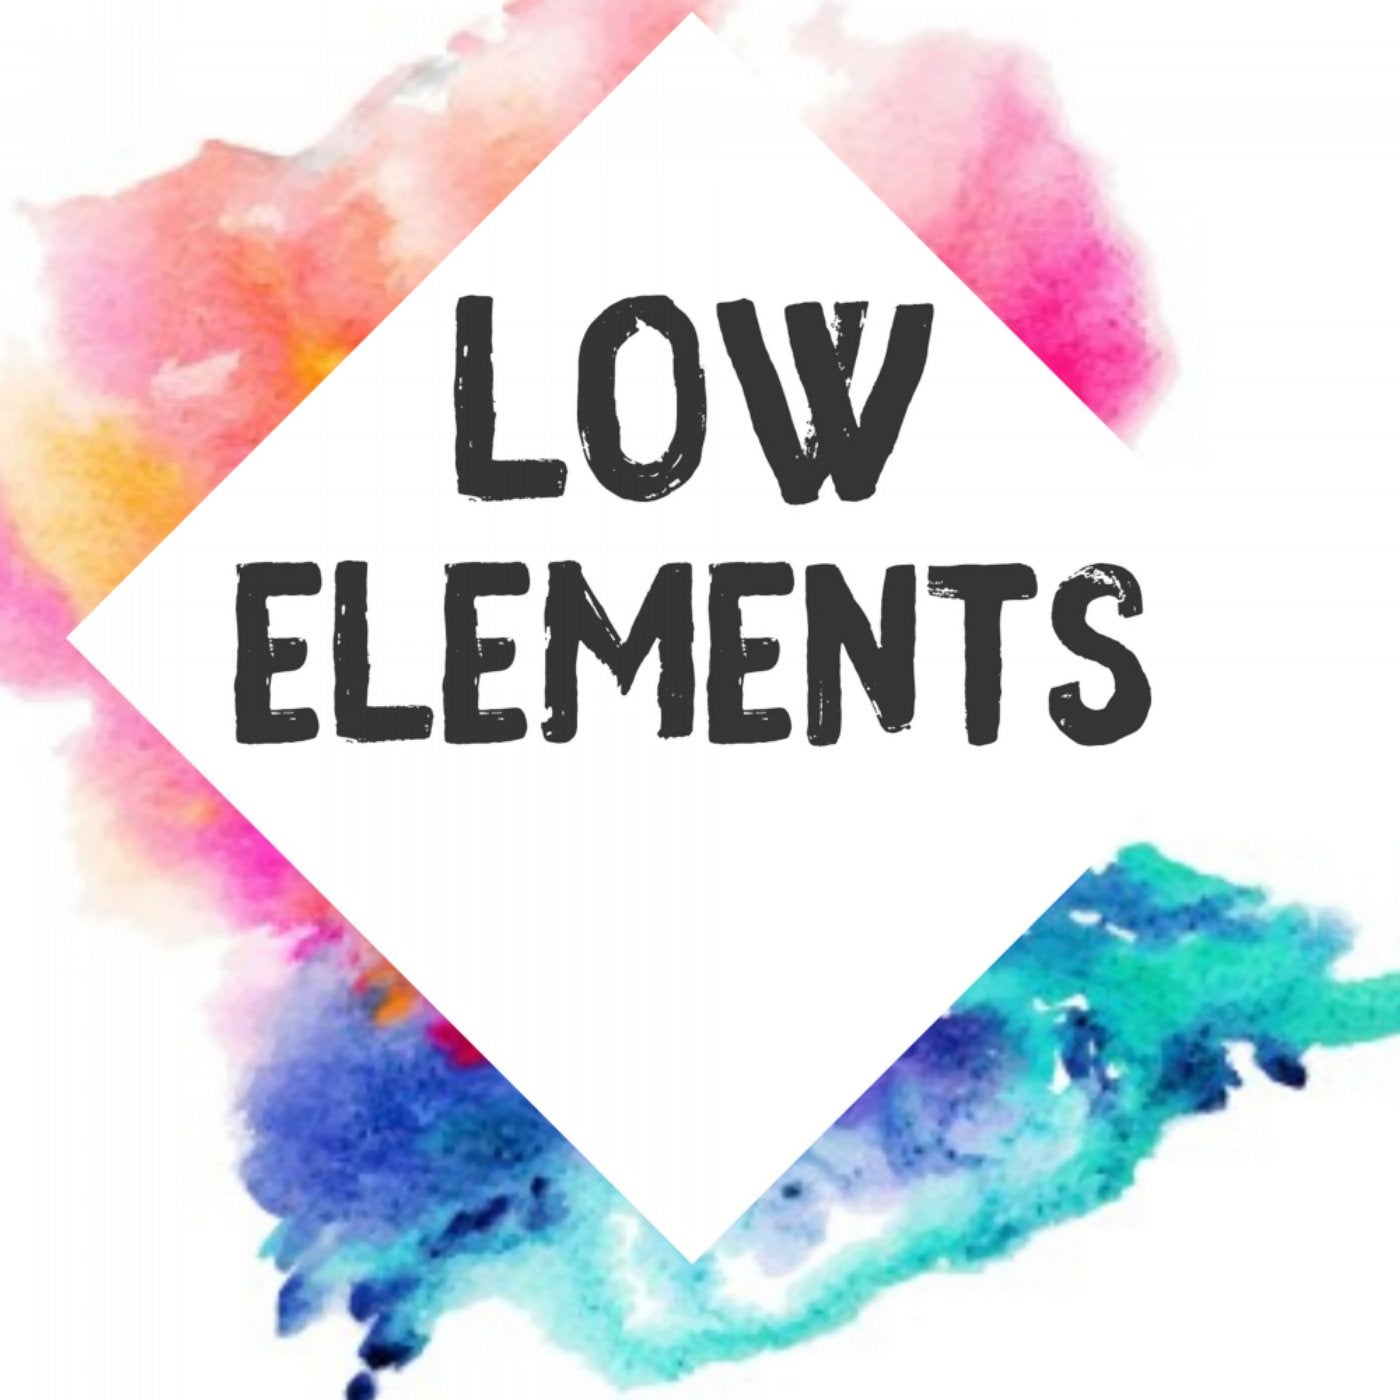 Low Elements